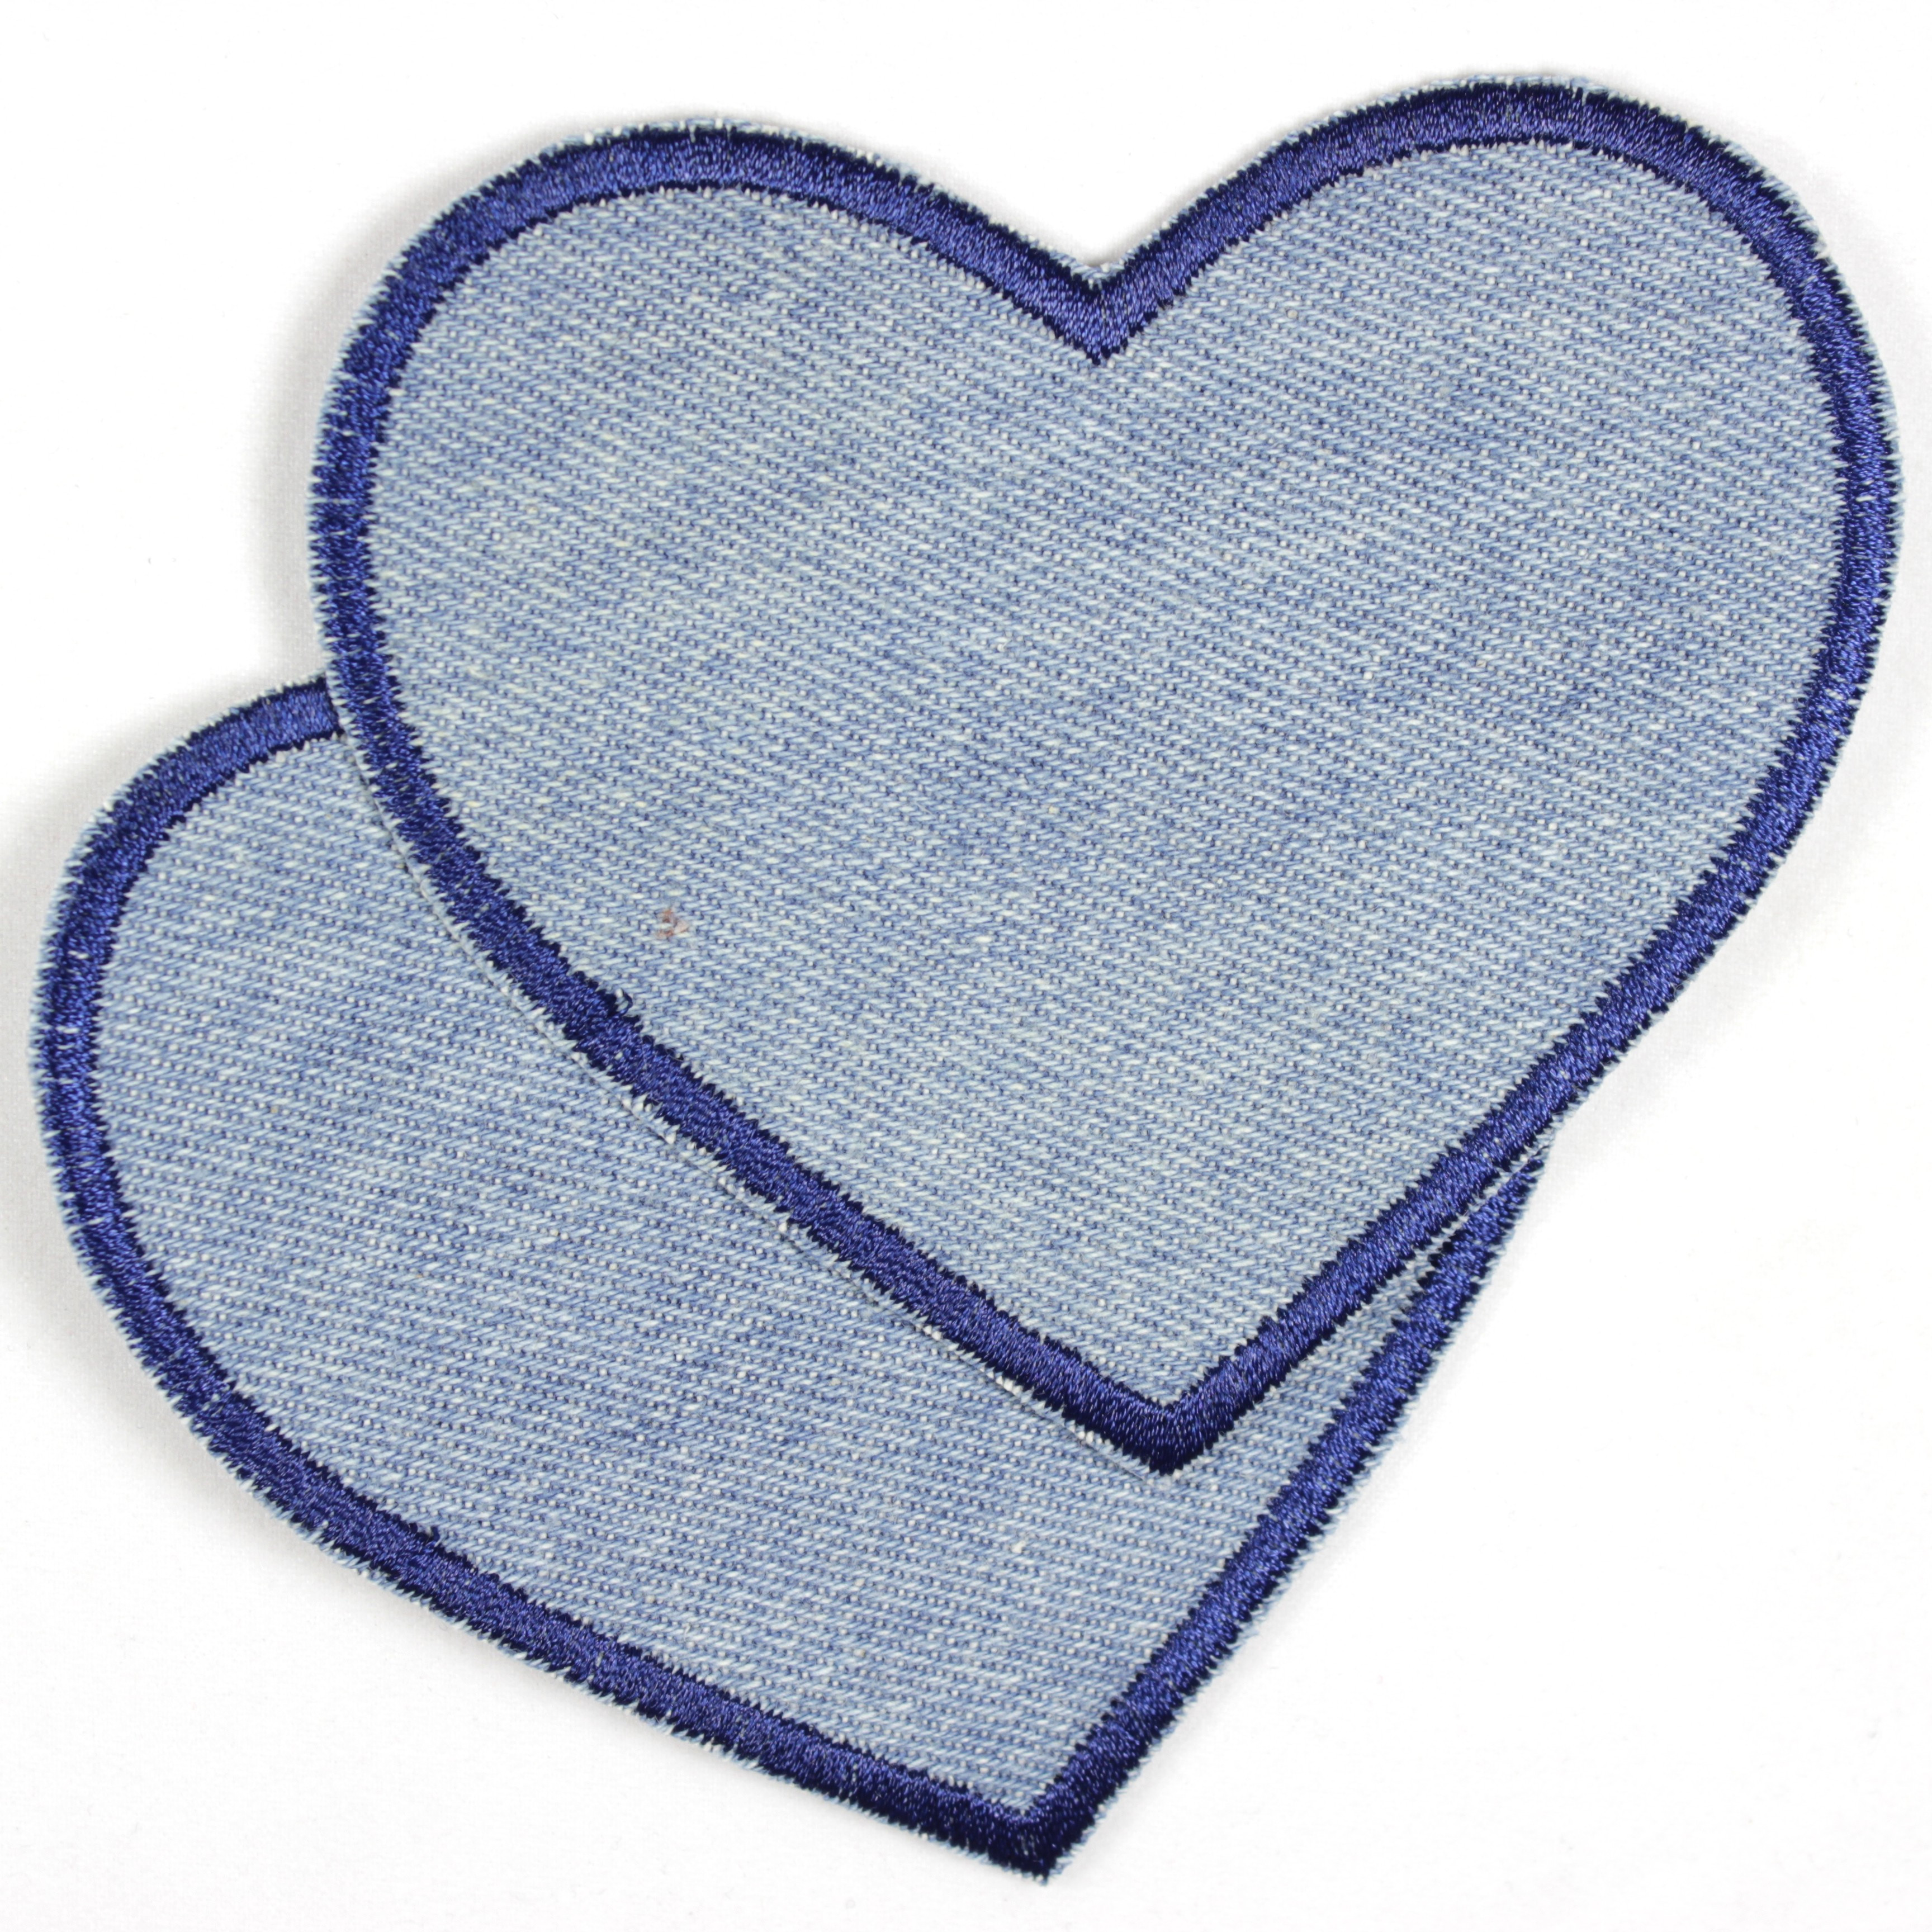 Bügelflicken Herzen Jeans hellblau dunkelblauer Rand